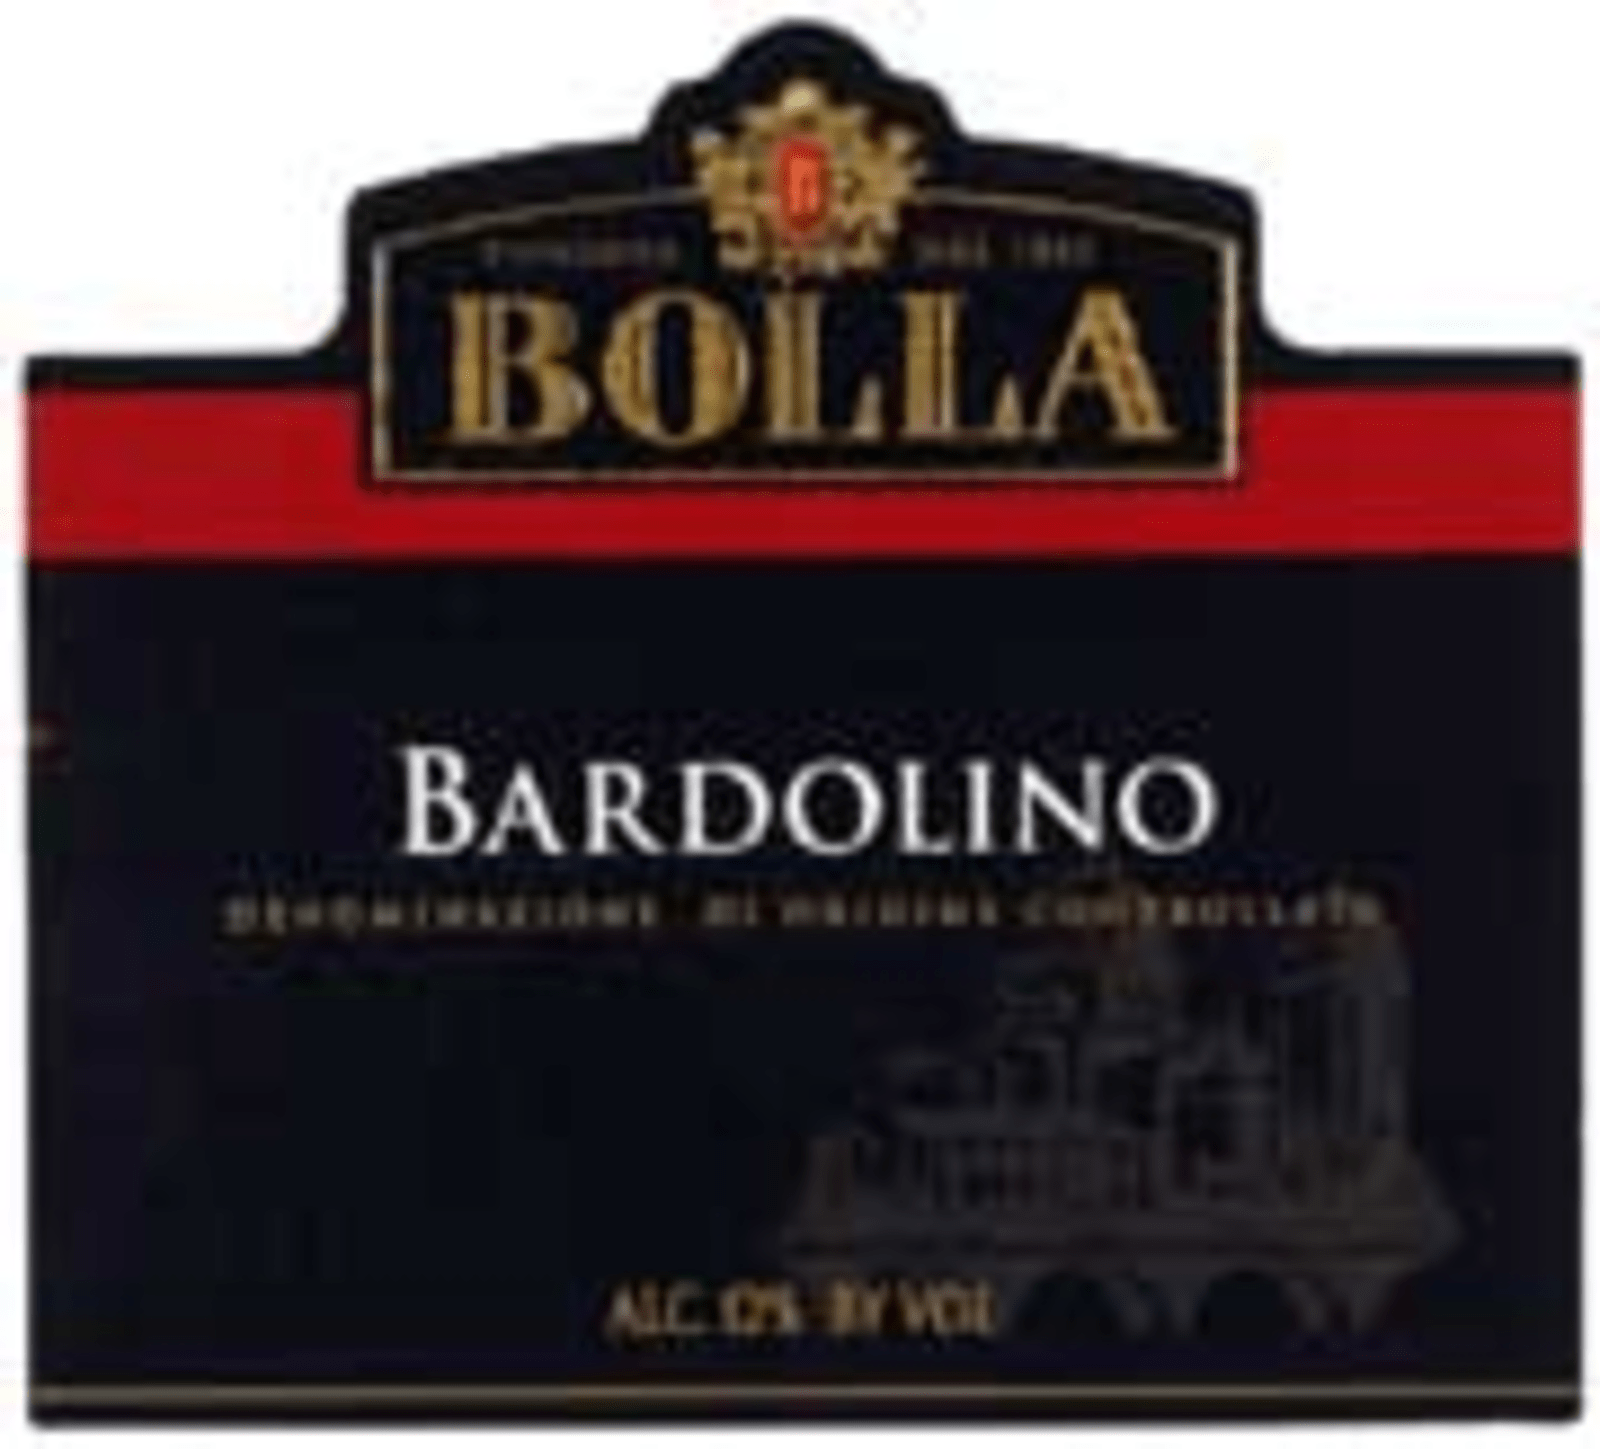 Bolla – Bardolino 1.5L